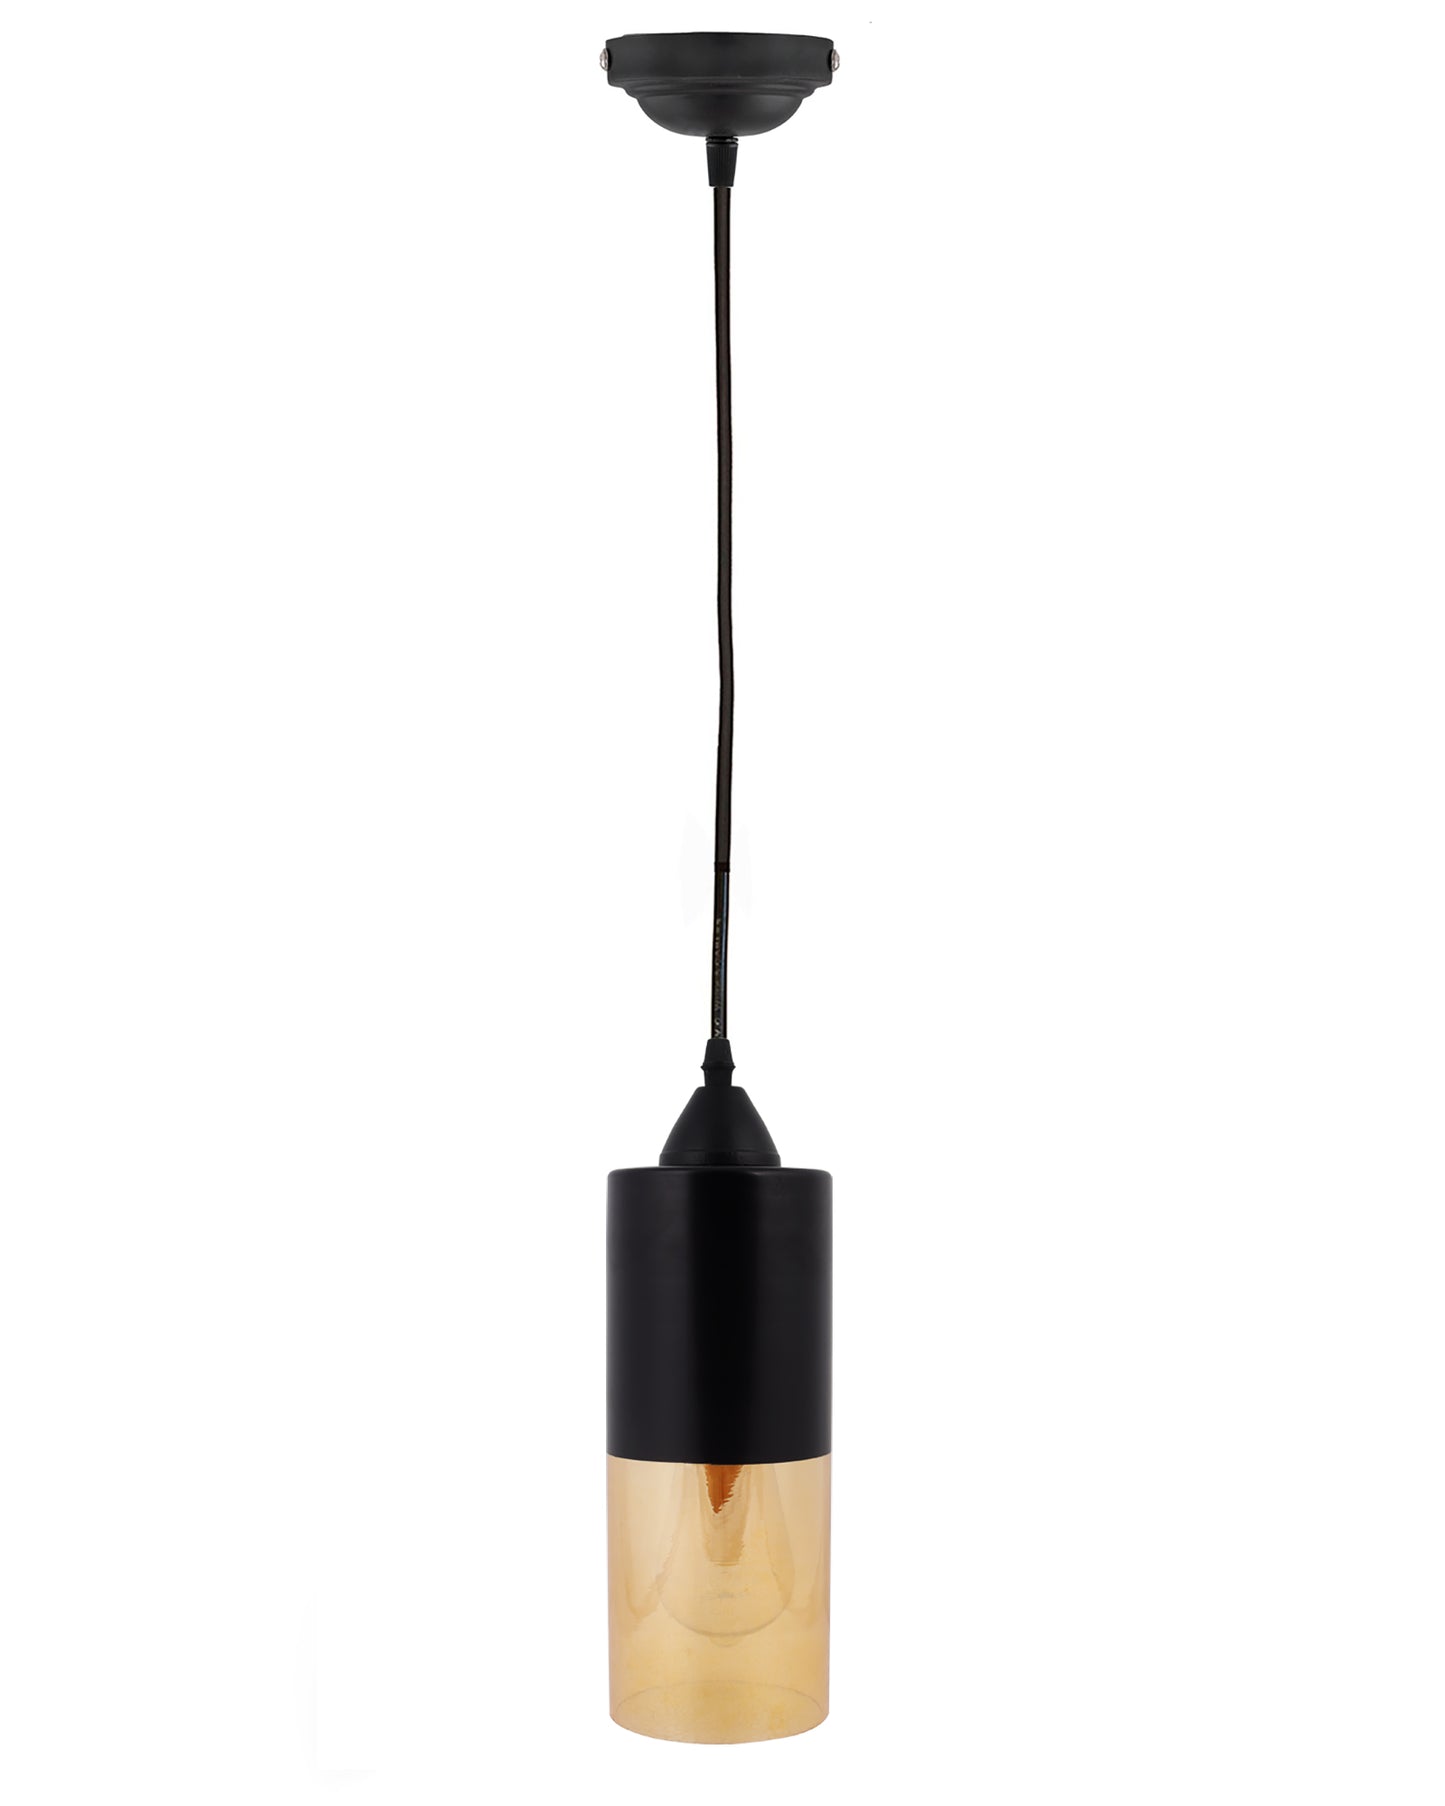 Glass Tube Pendant Light Loft Bar Counter Dining Room Ceiling Hanging Lamp, E27